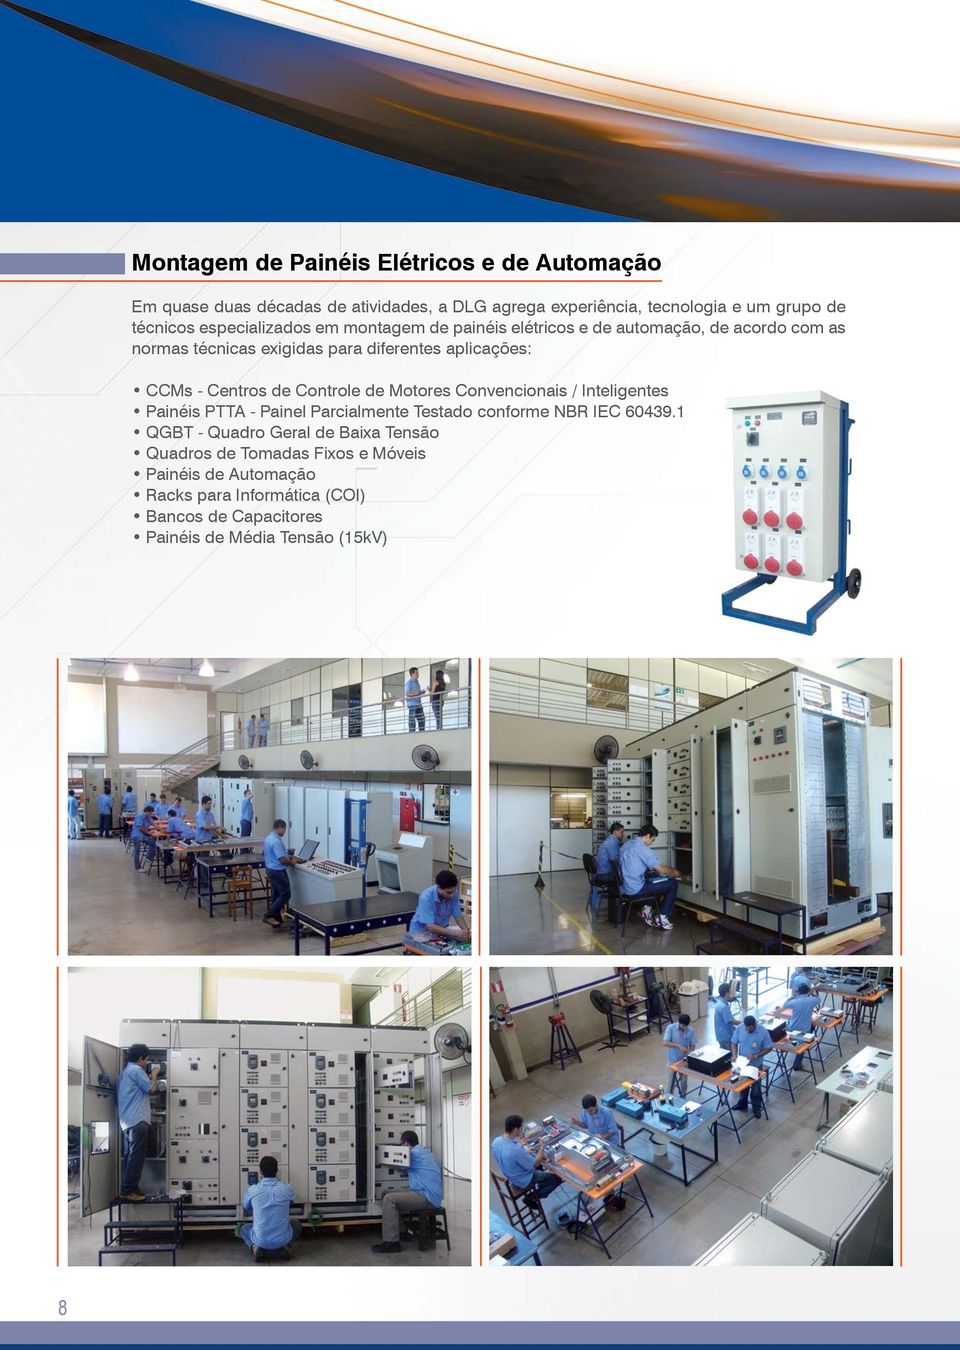 Centros de Controle de Motores Convencionais / Inteligentes Painéis PTTA - Painel Parcialmente Testado conforme NBR IEC 60439.